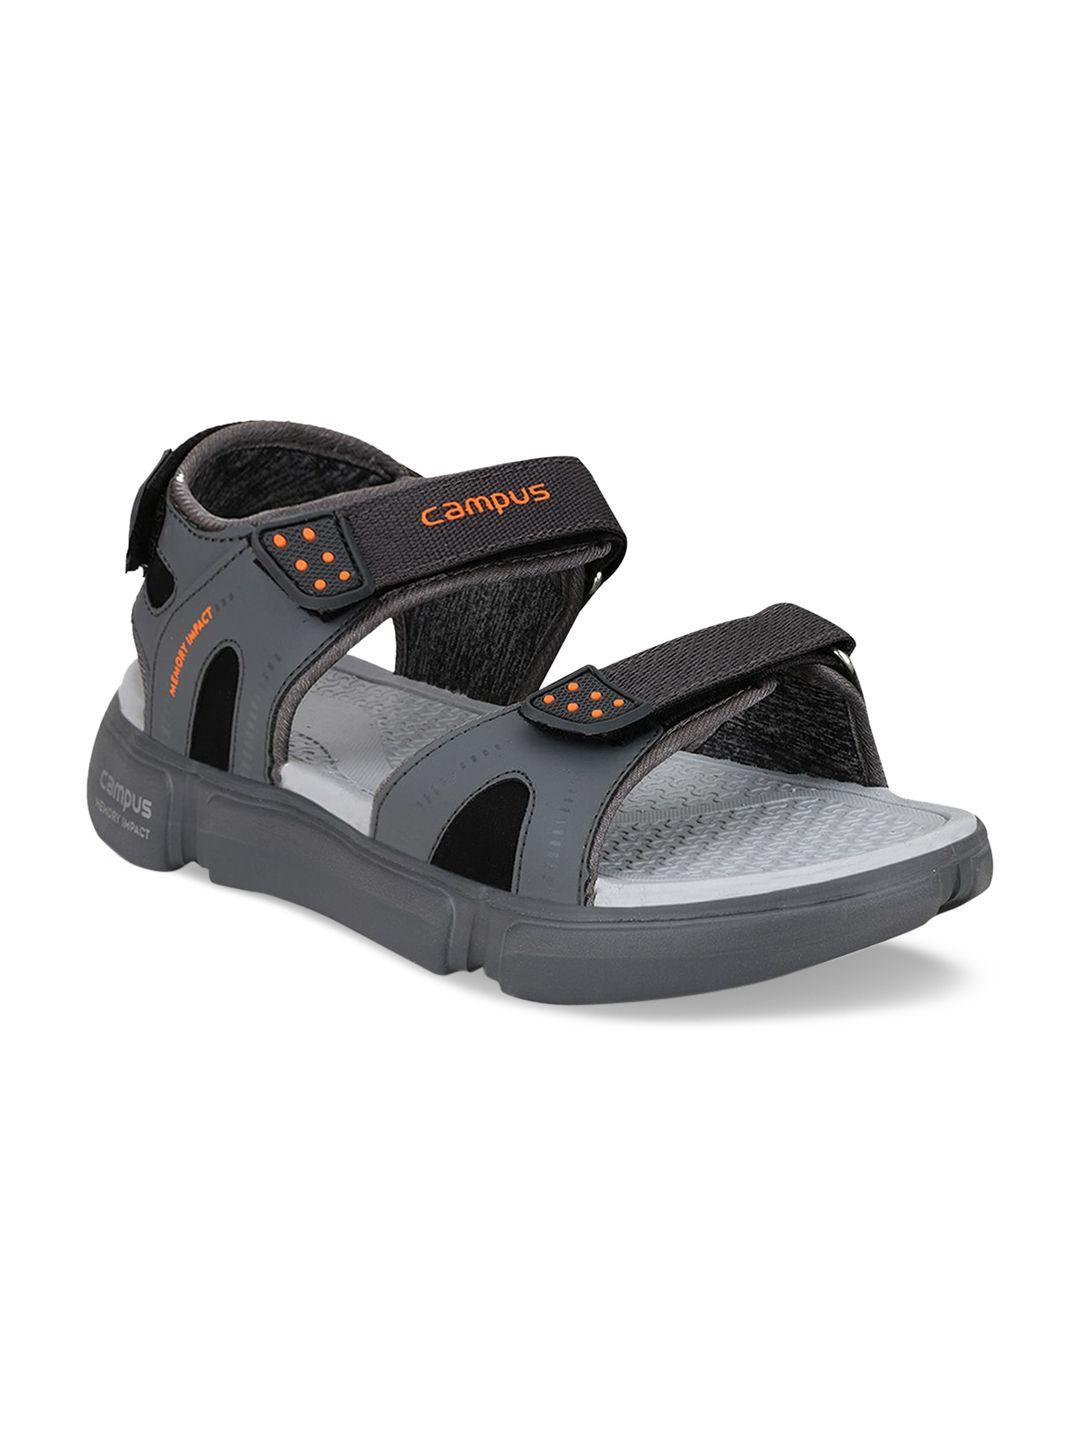 campus men grey & orange comfort sandals